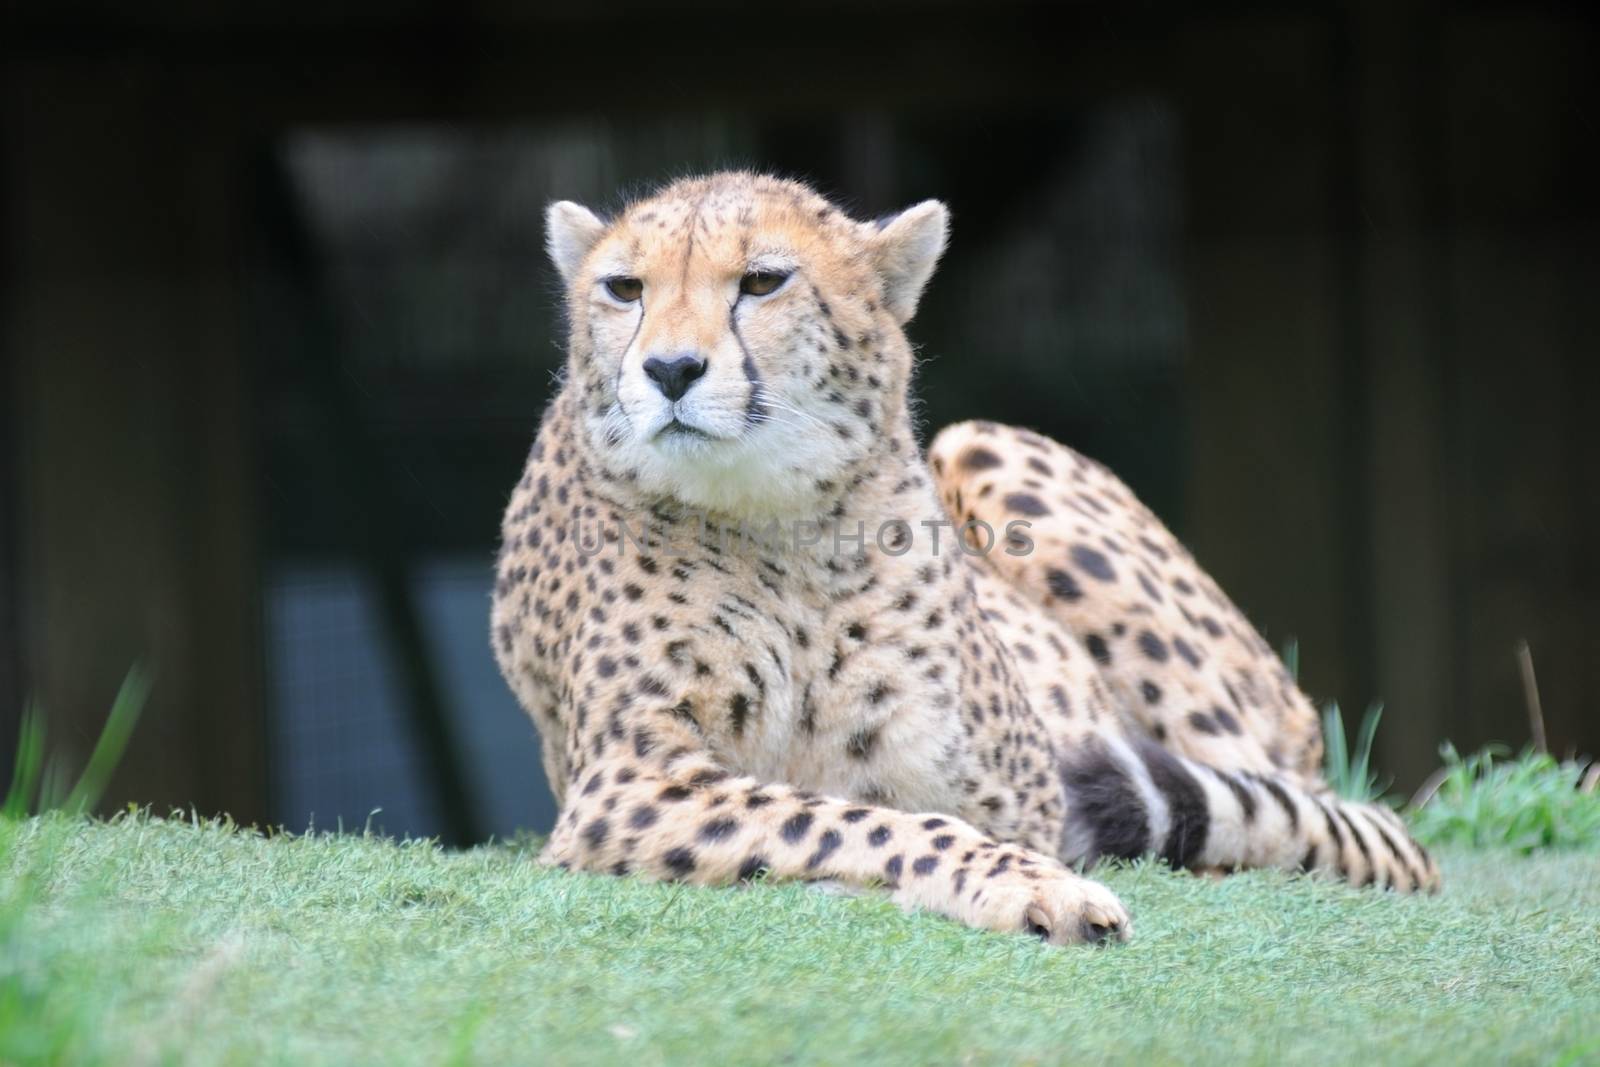 Cheetah resting and alert